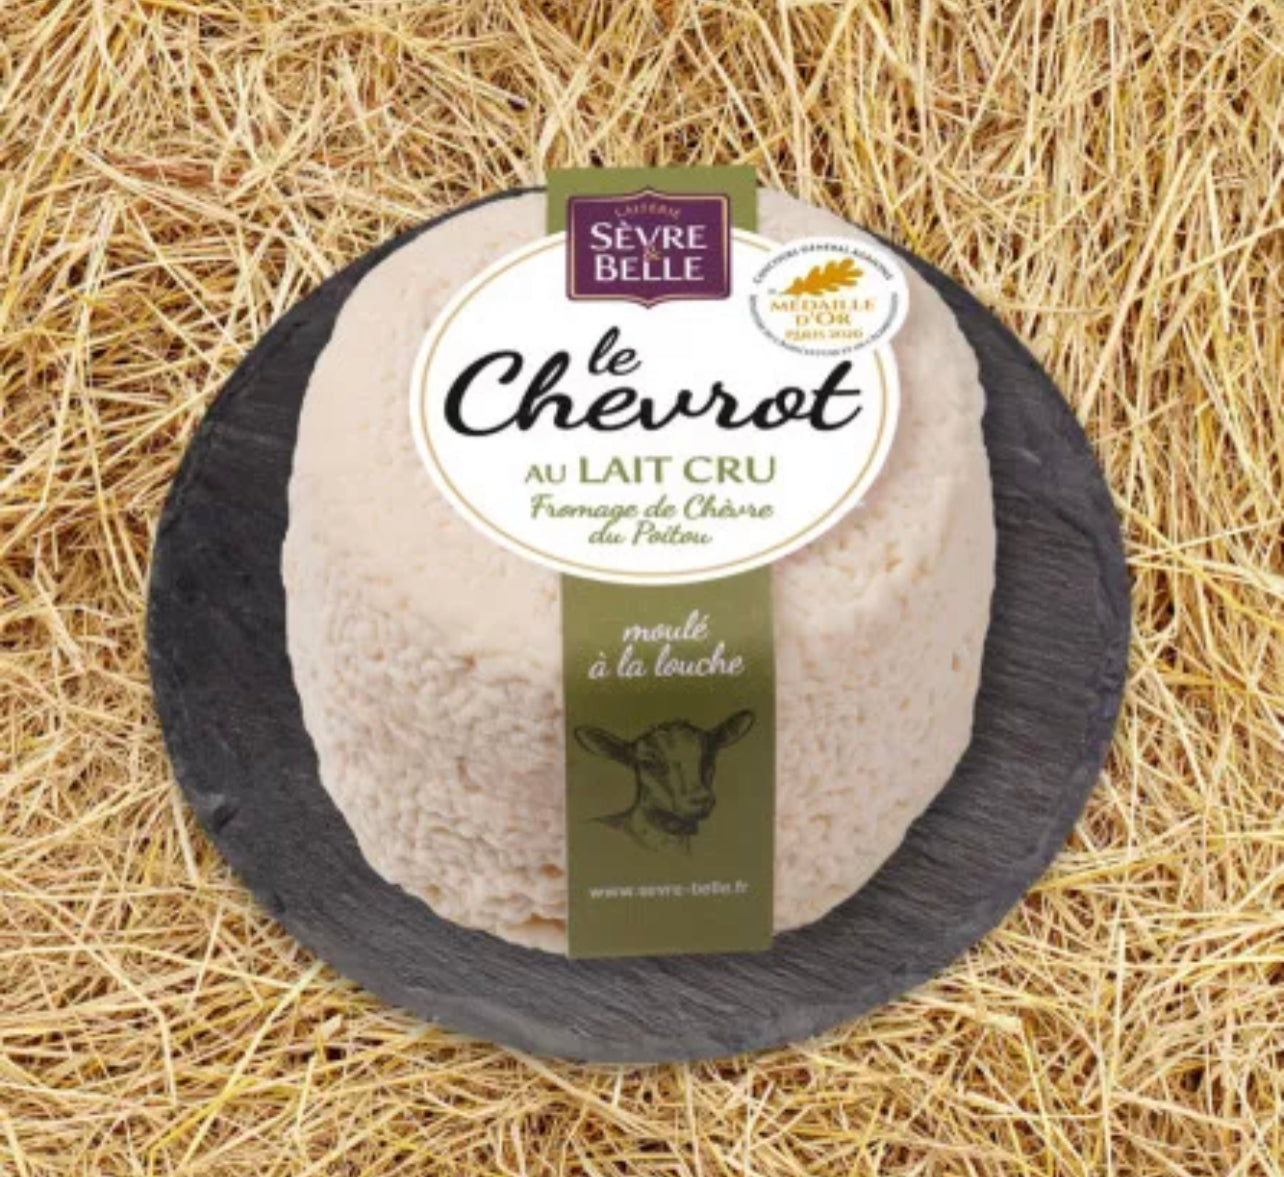 Le Chevrot | Fromage de chèvre au lait cru - 200g